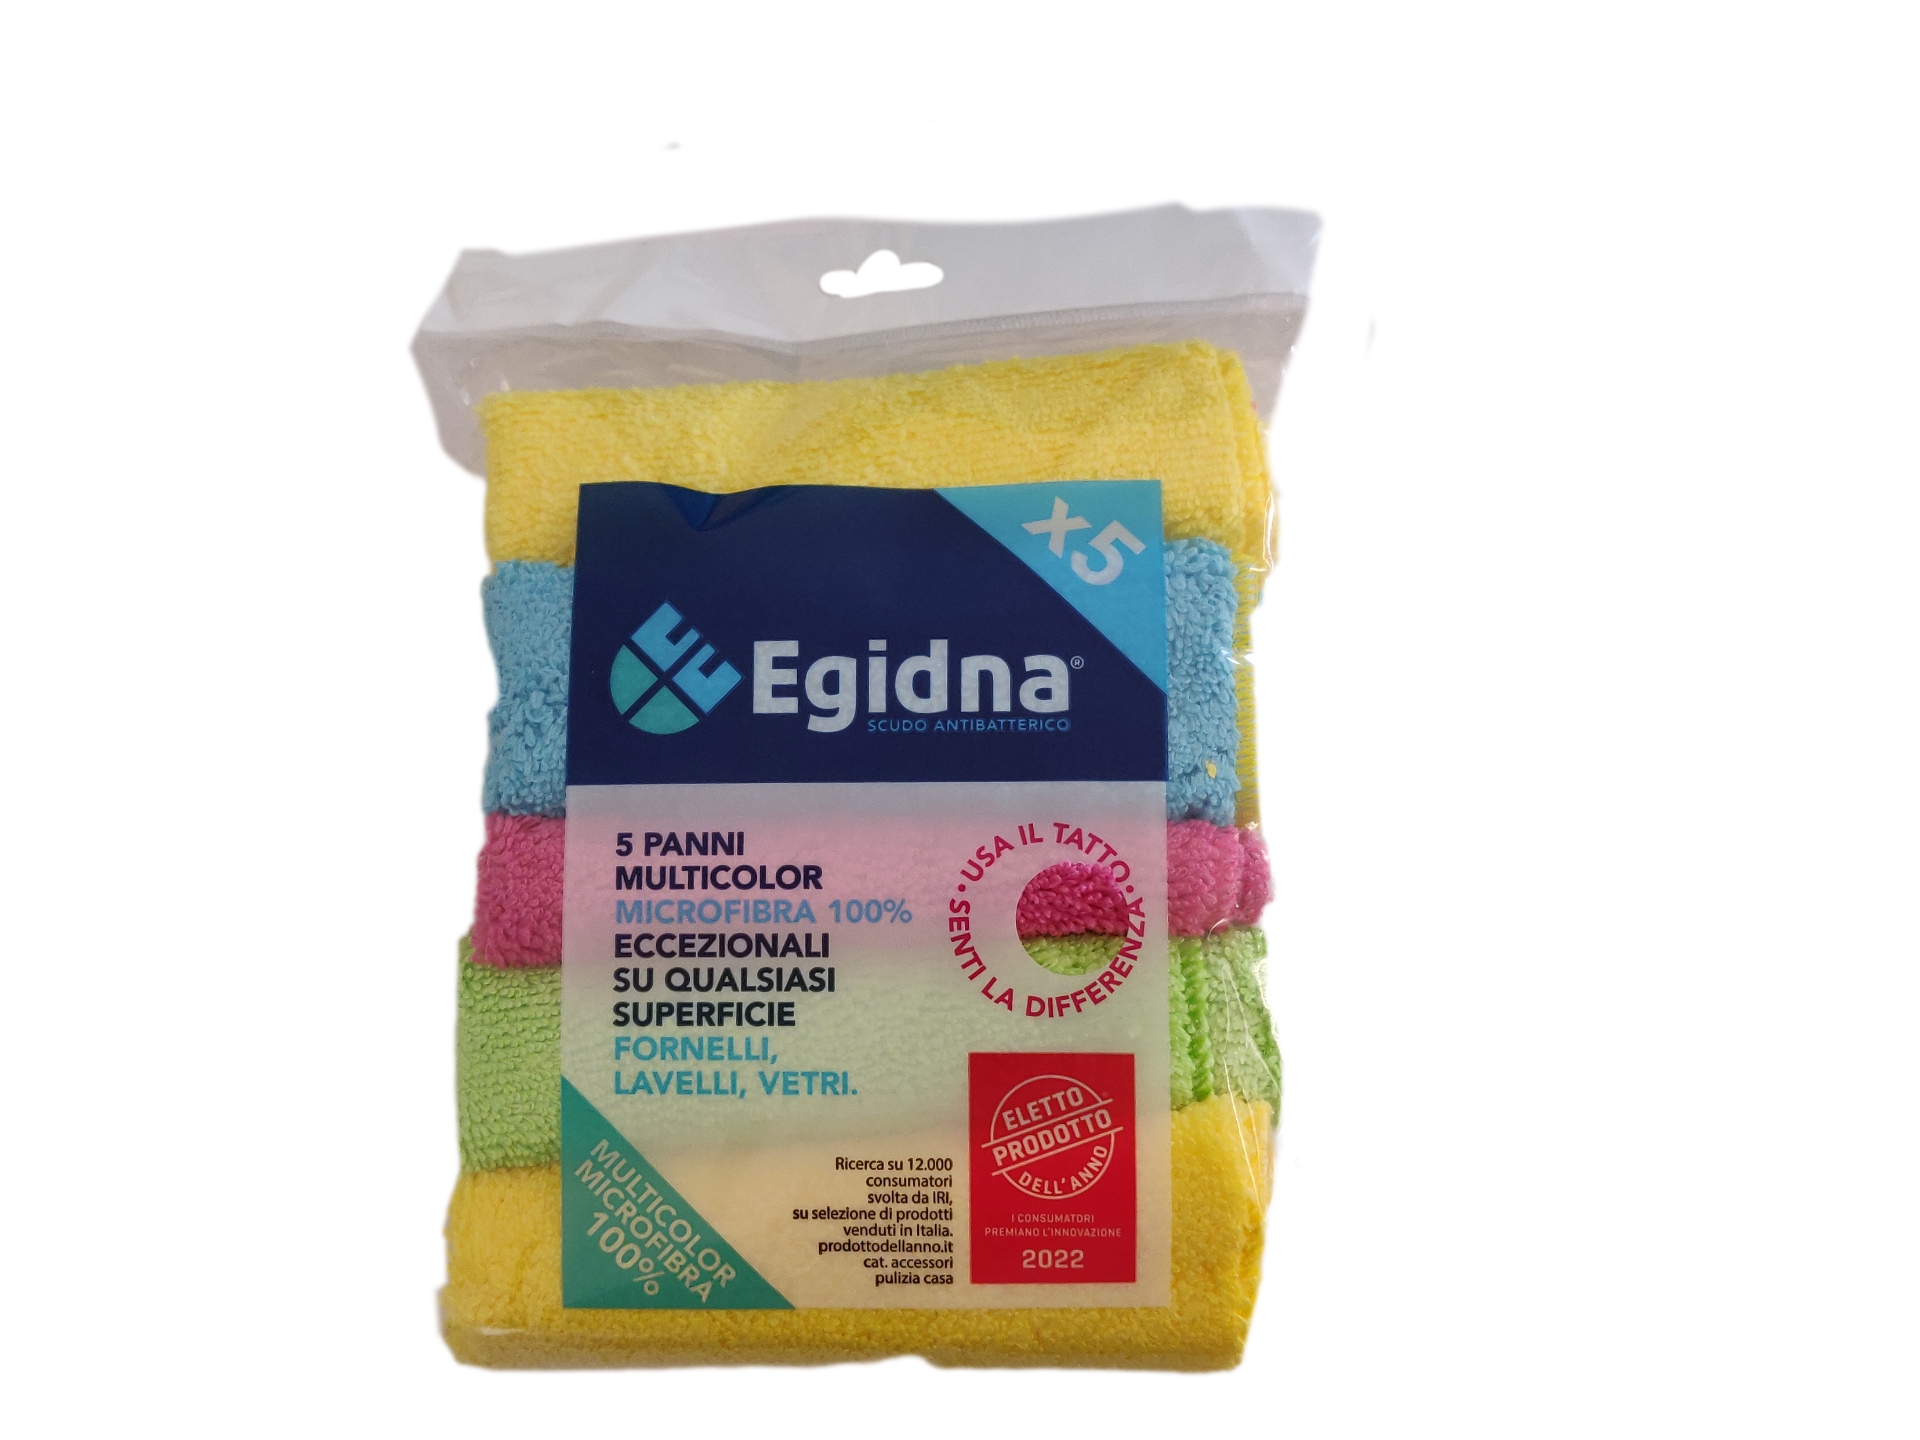 5 Panni colorati microfibra - Egidna